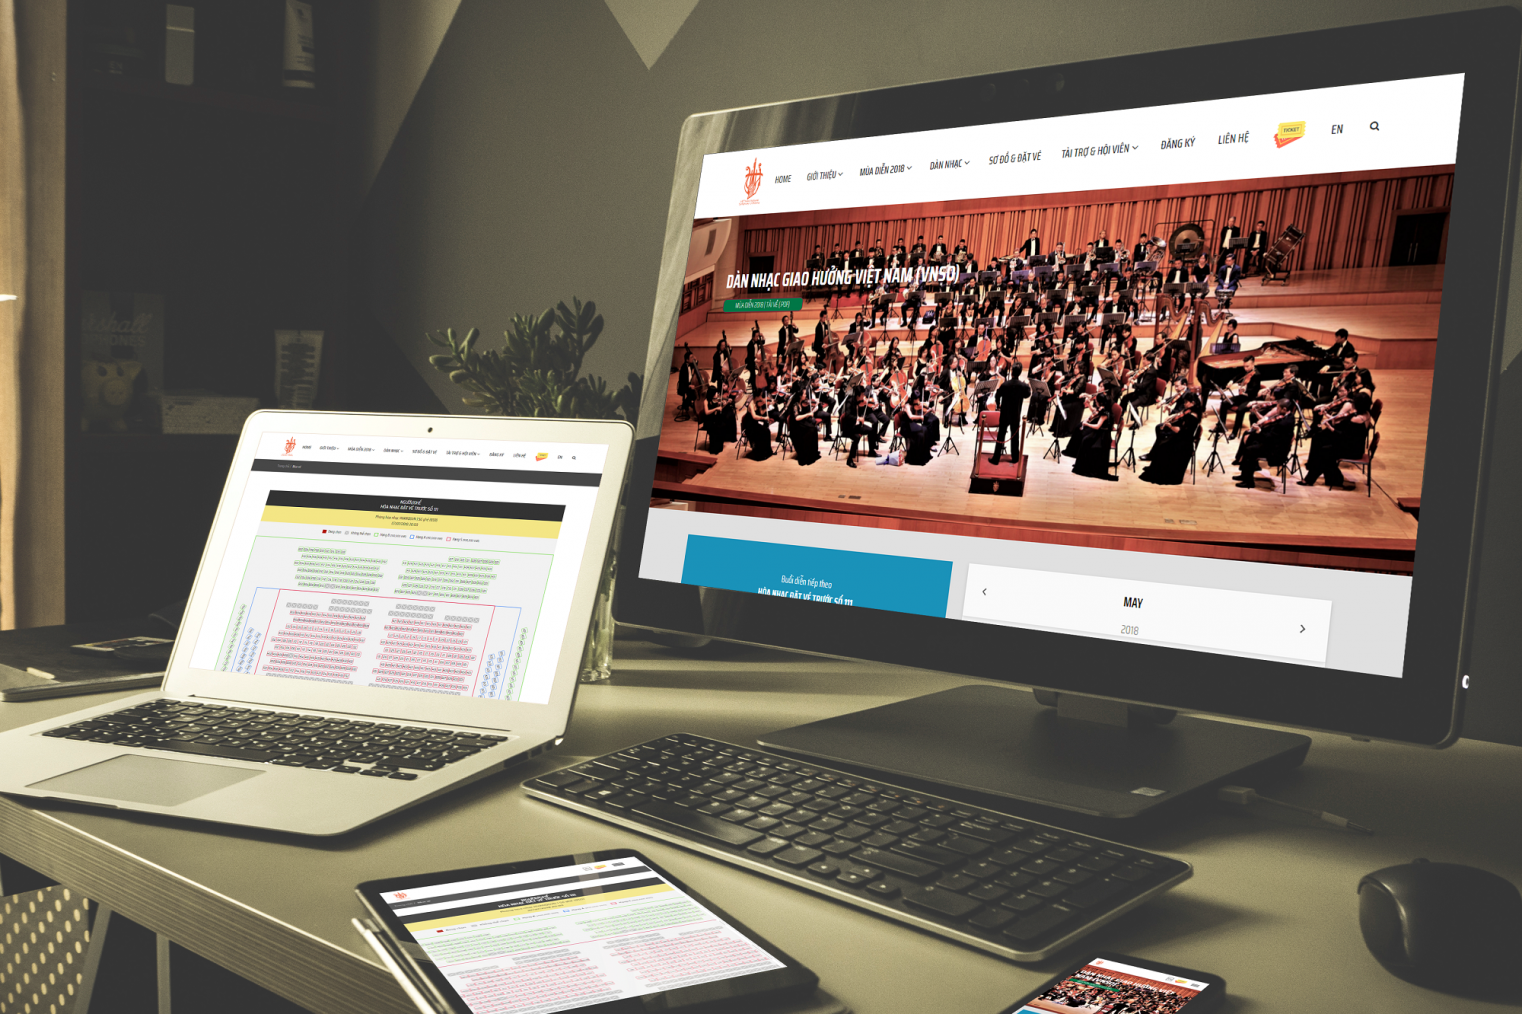 Thiết kế website bán vé trực tuyến giàn nhạc giao hưởng việt nam